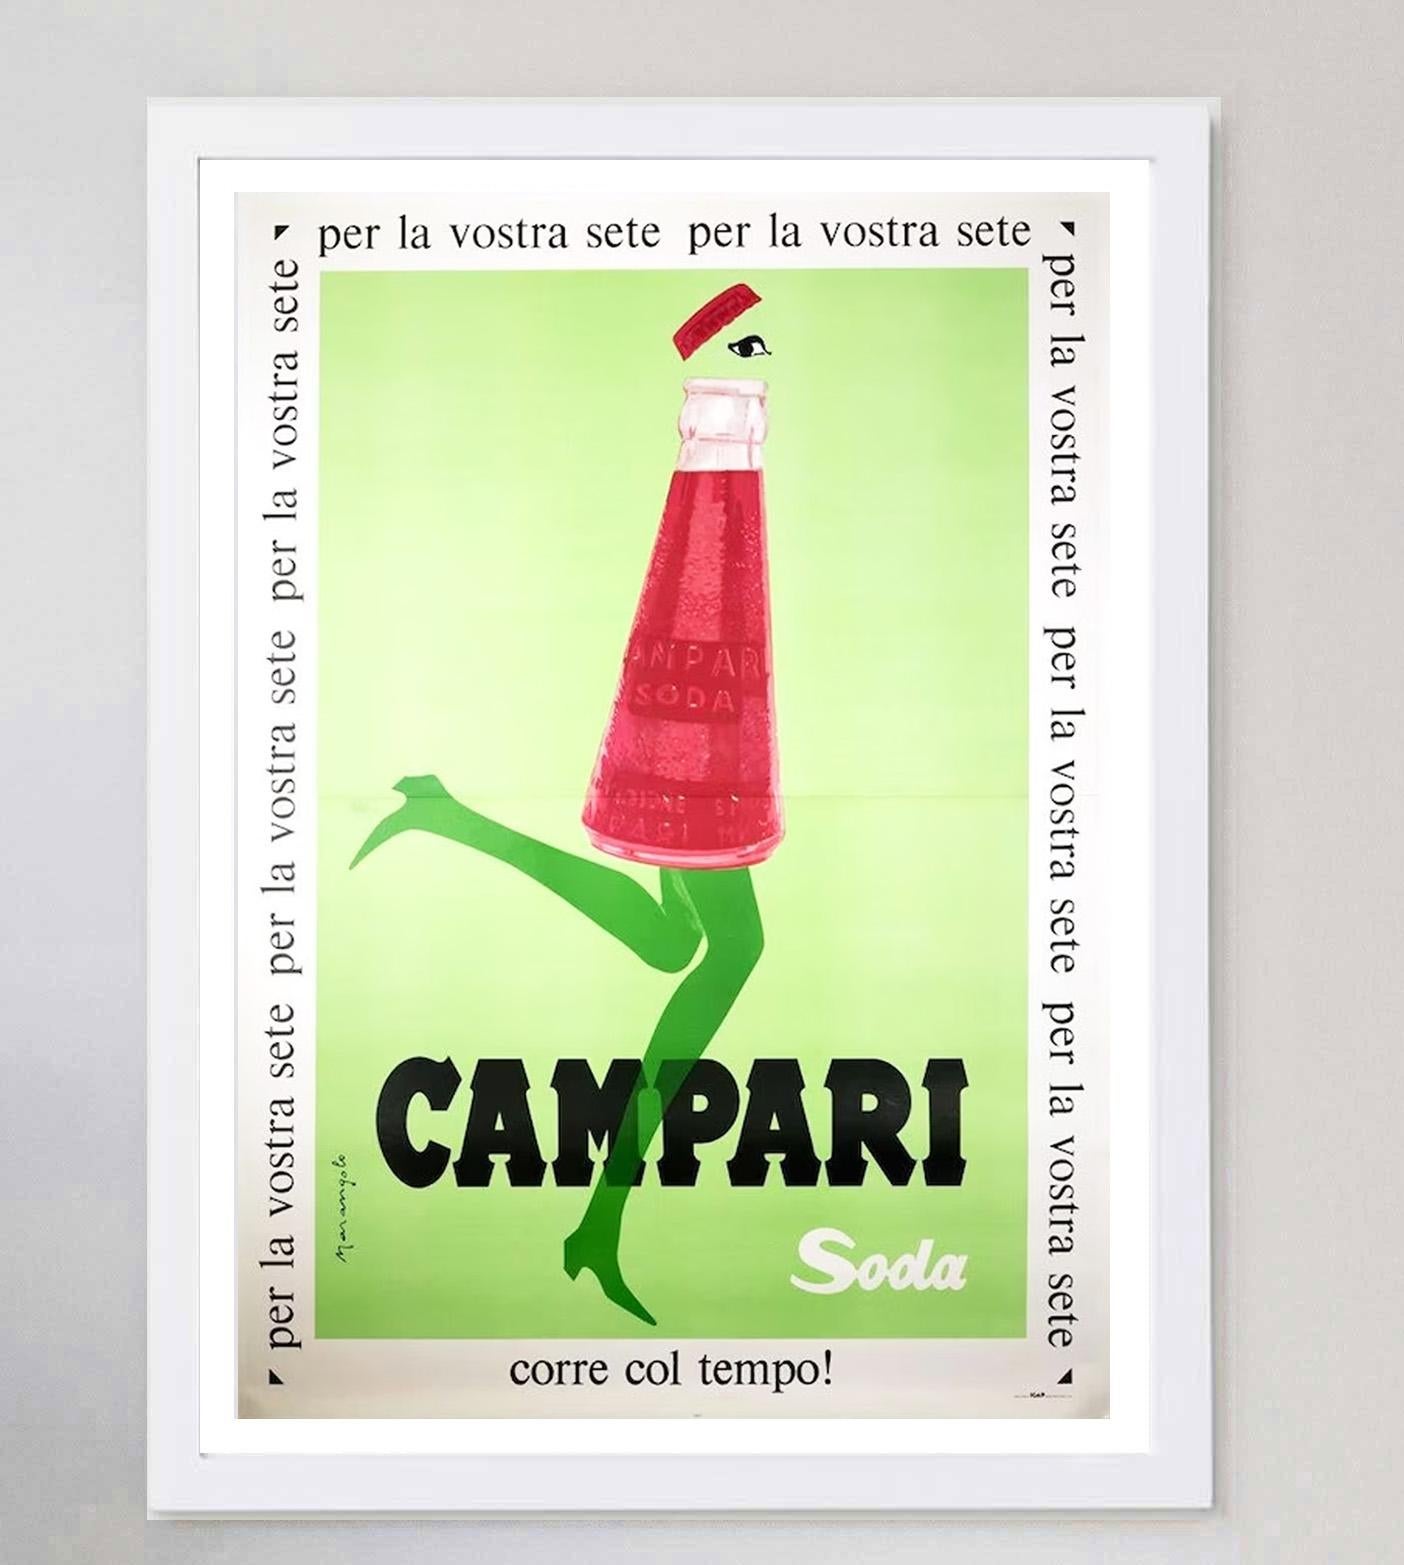 1968 Campari Soda - Marangolo Original Vintage Poster In Good Condition For Sale In Winchester, GB